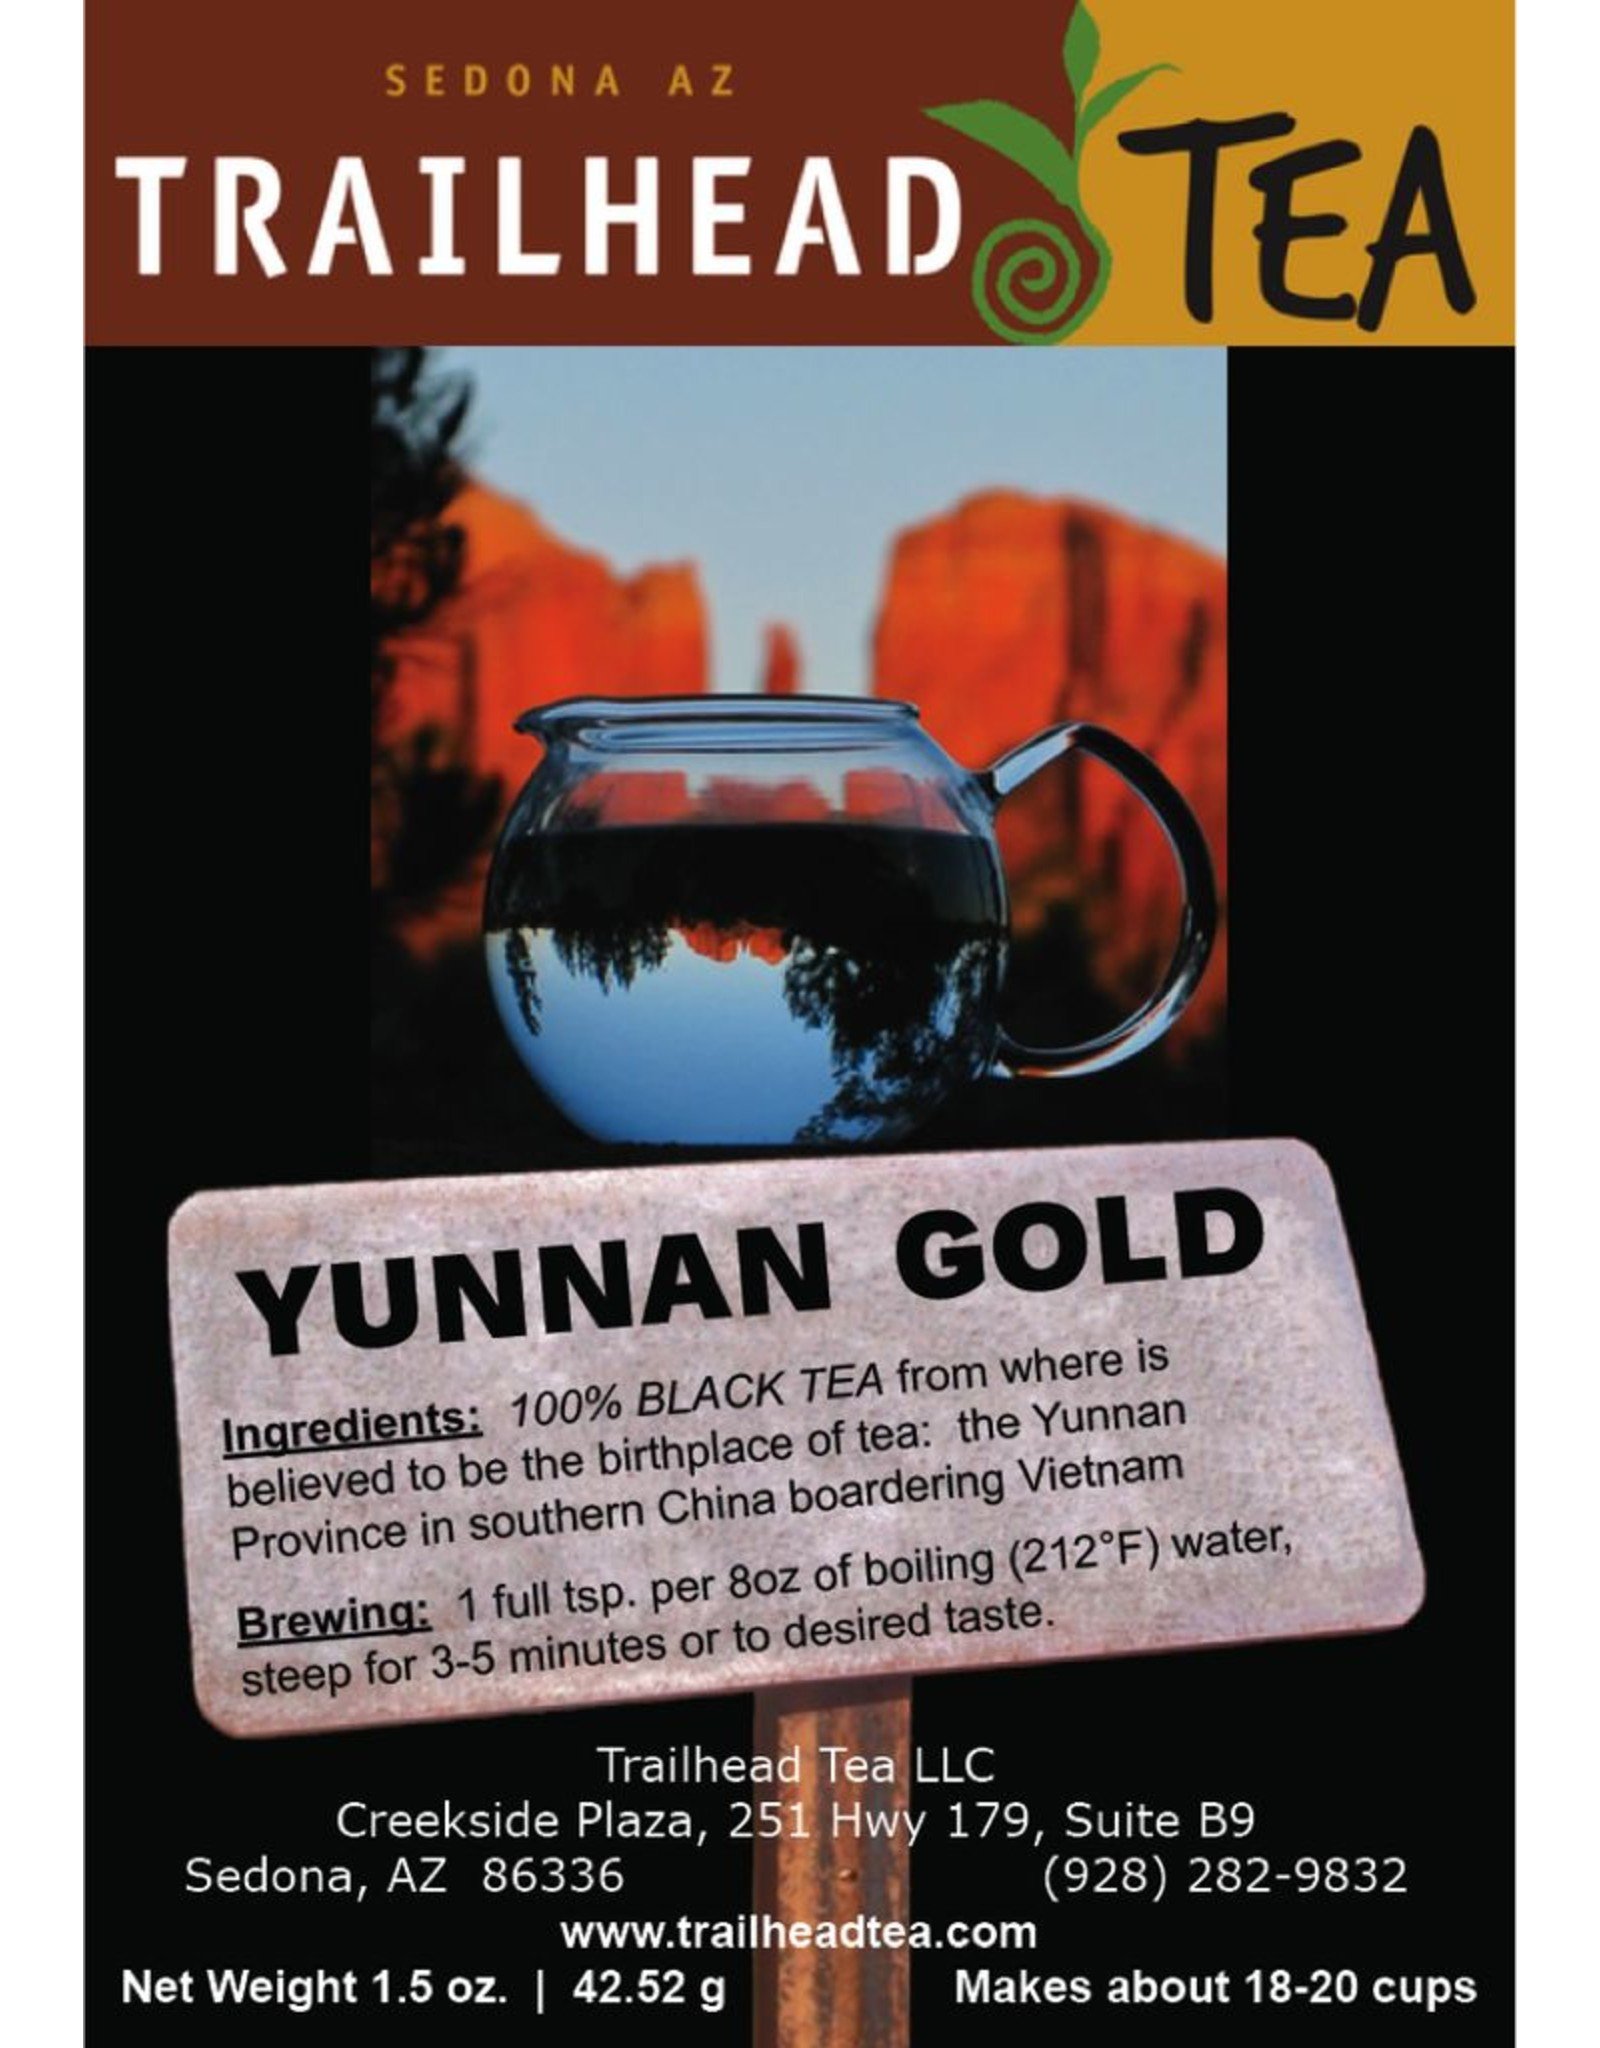 Tea from China Yunnan Gold